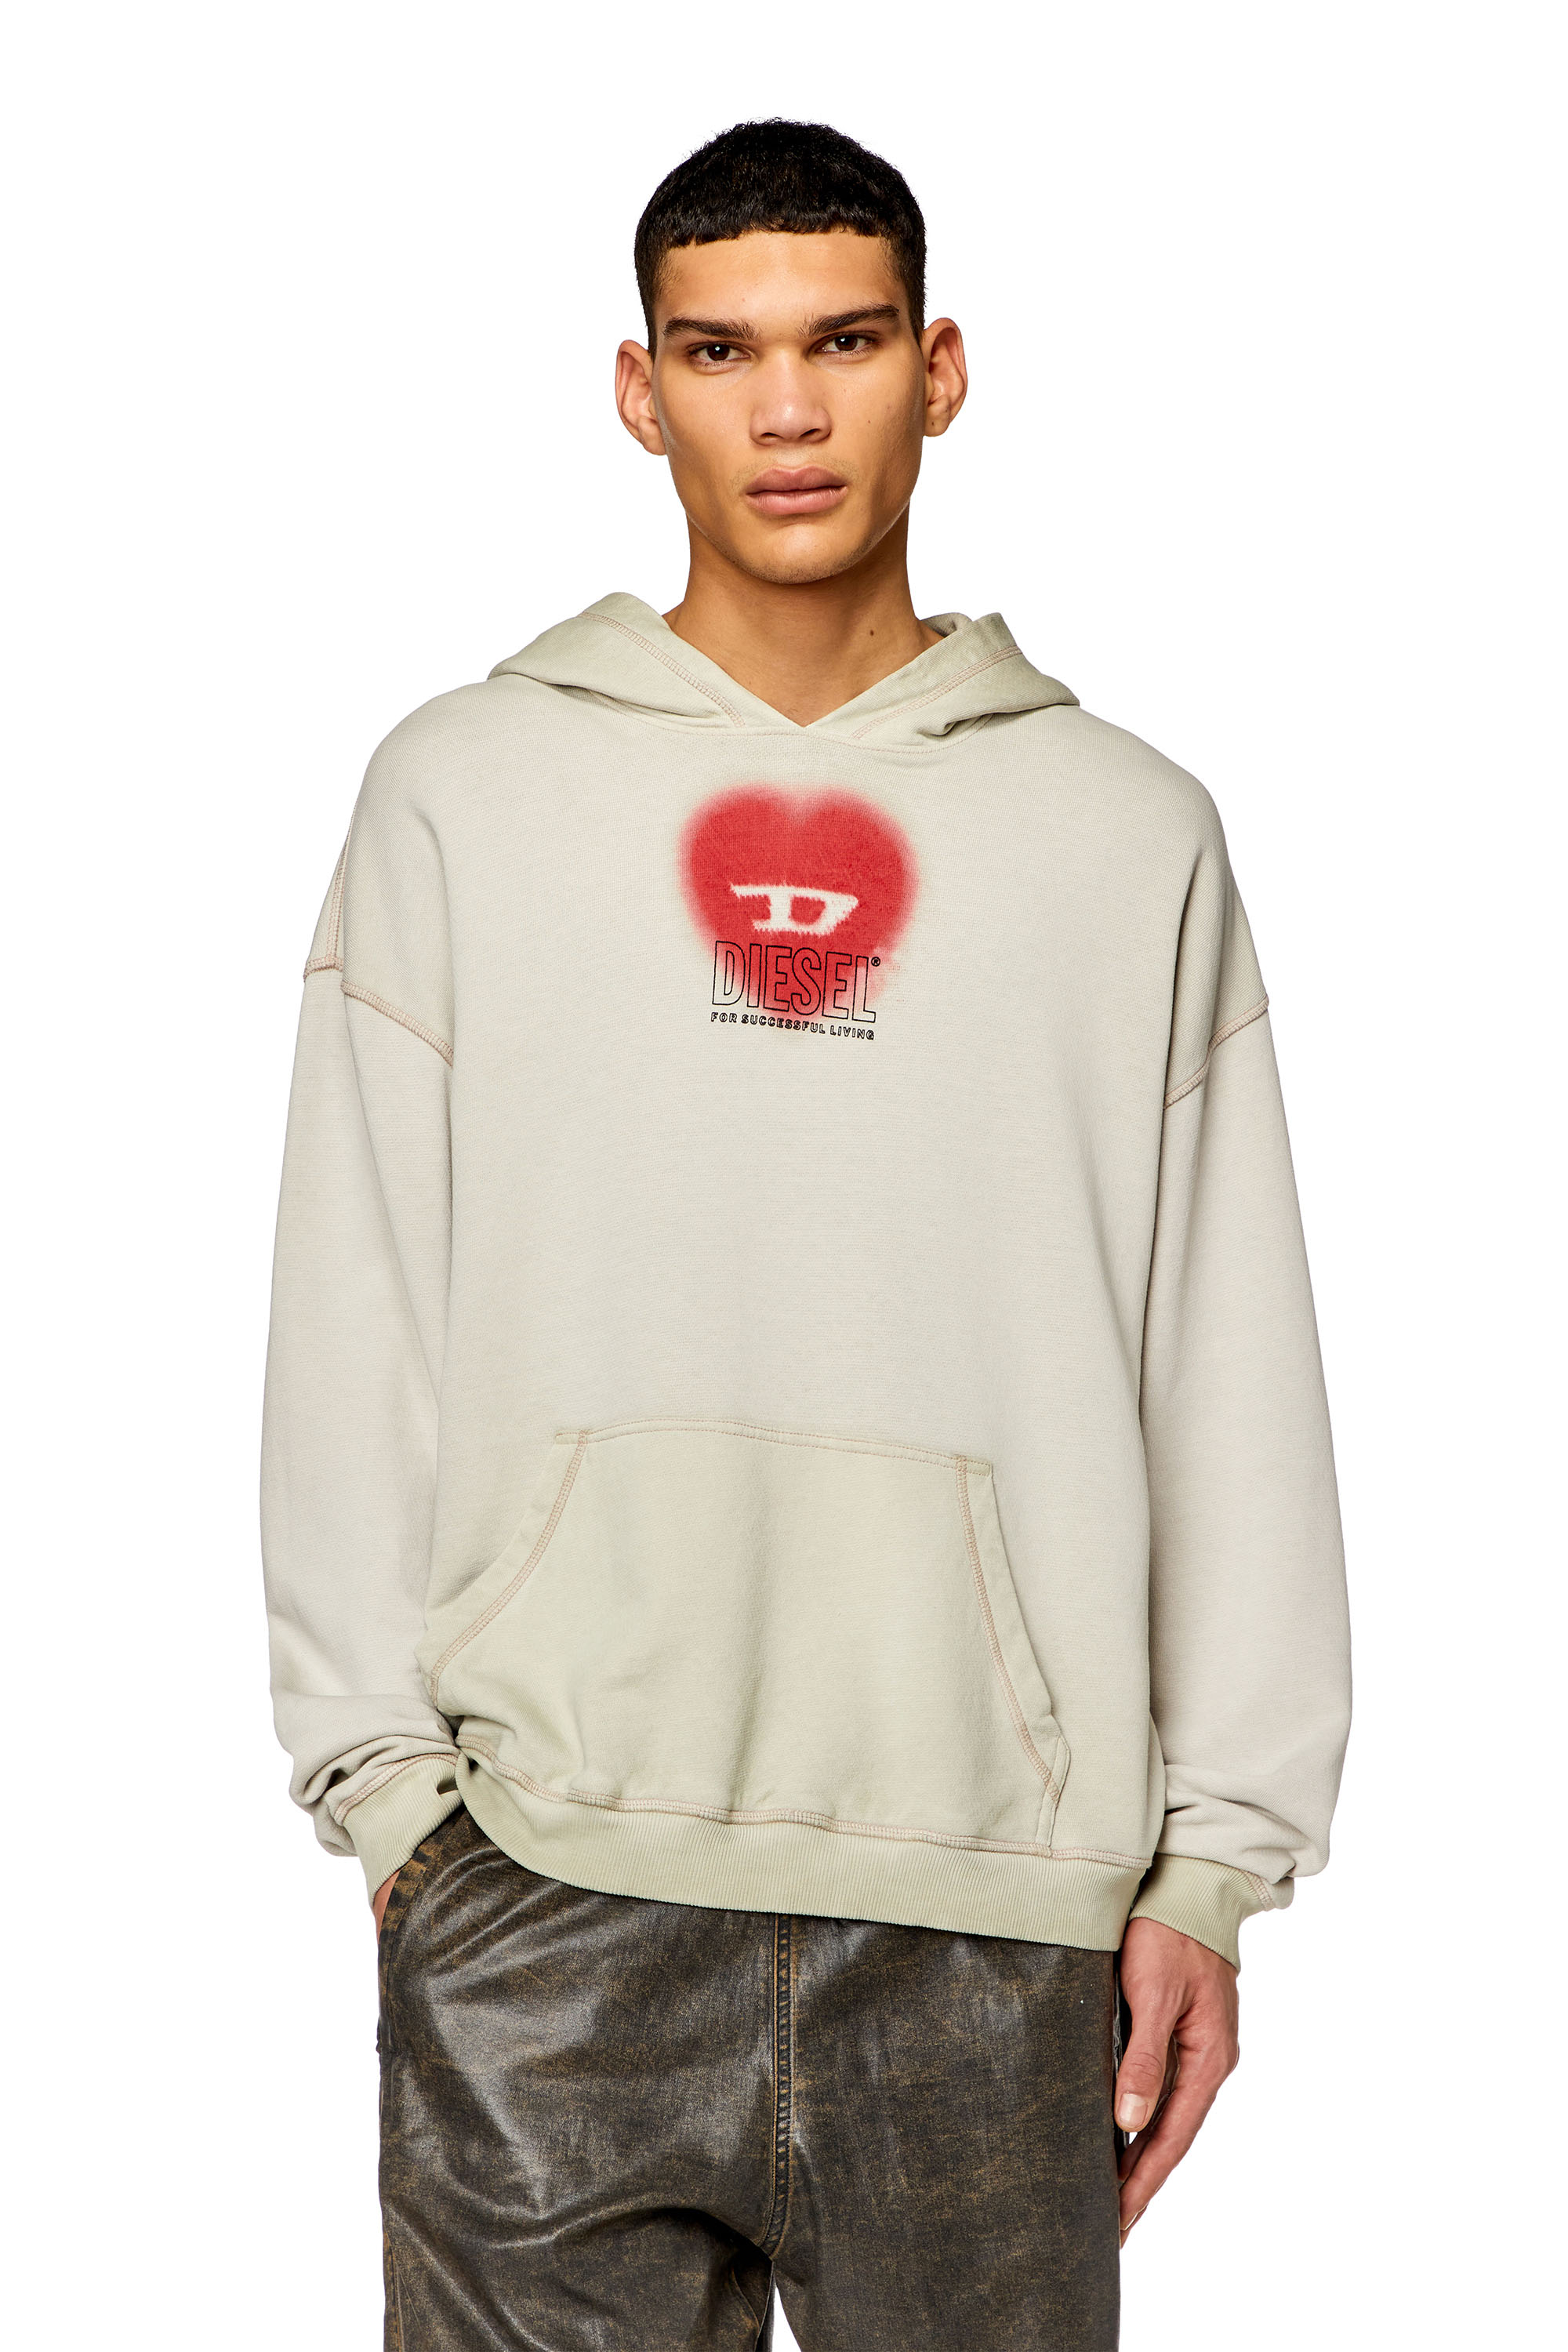 Diesel - S-BOXT-HOOD-N10, Man Faded hoodie with heart print in Beige - Image 1